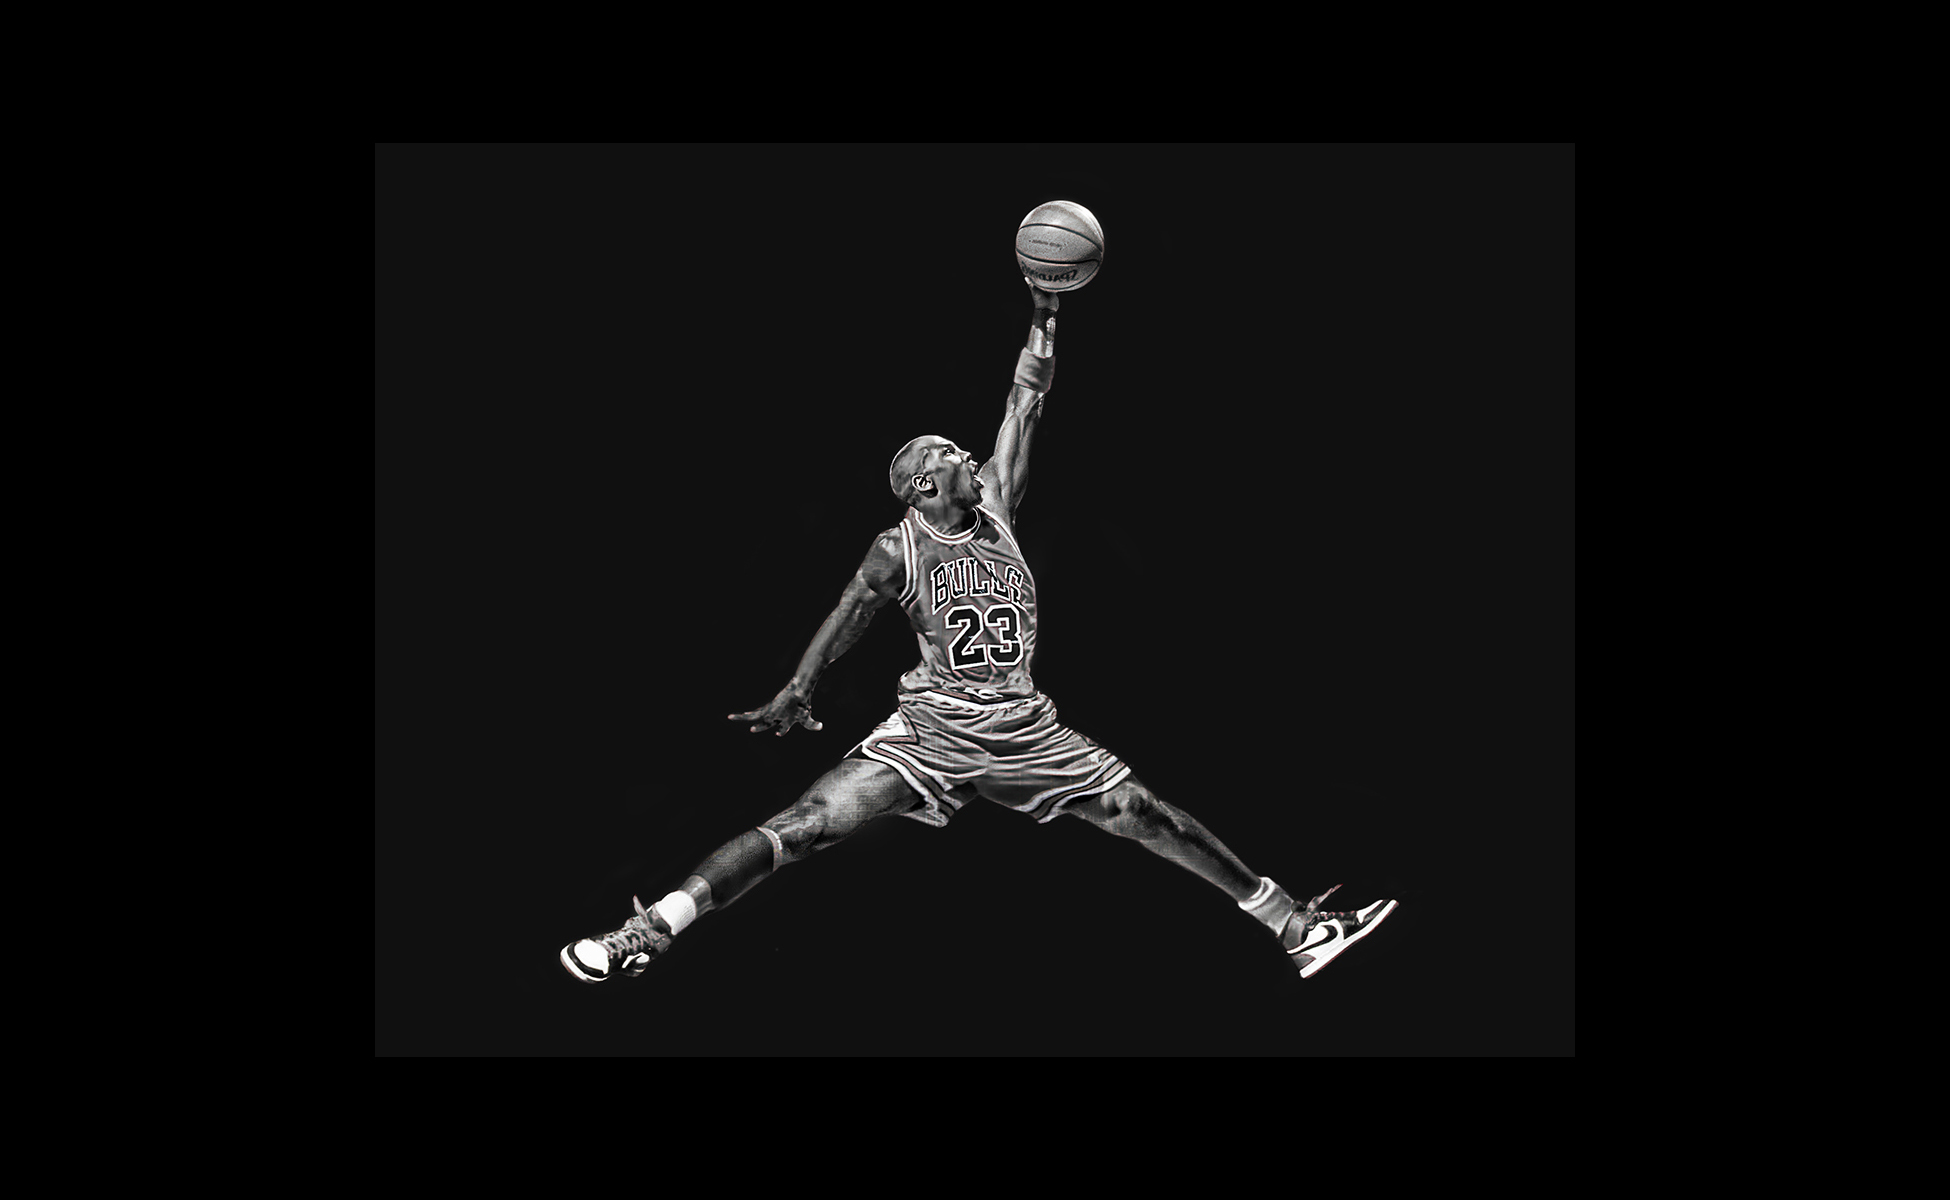 Jordan баскетболист черно белые